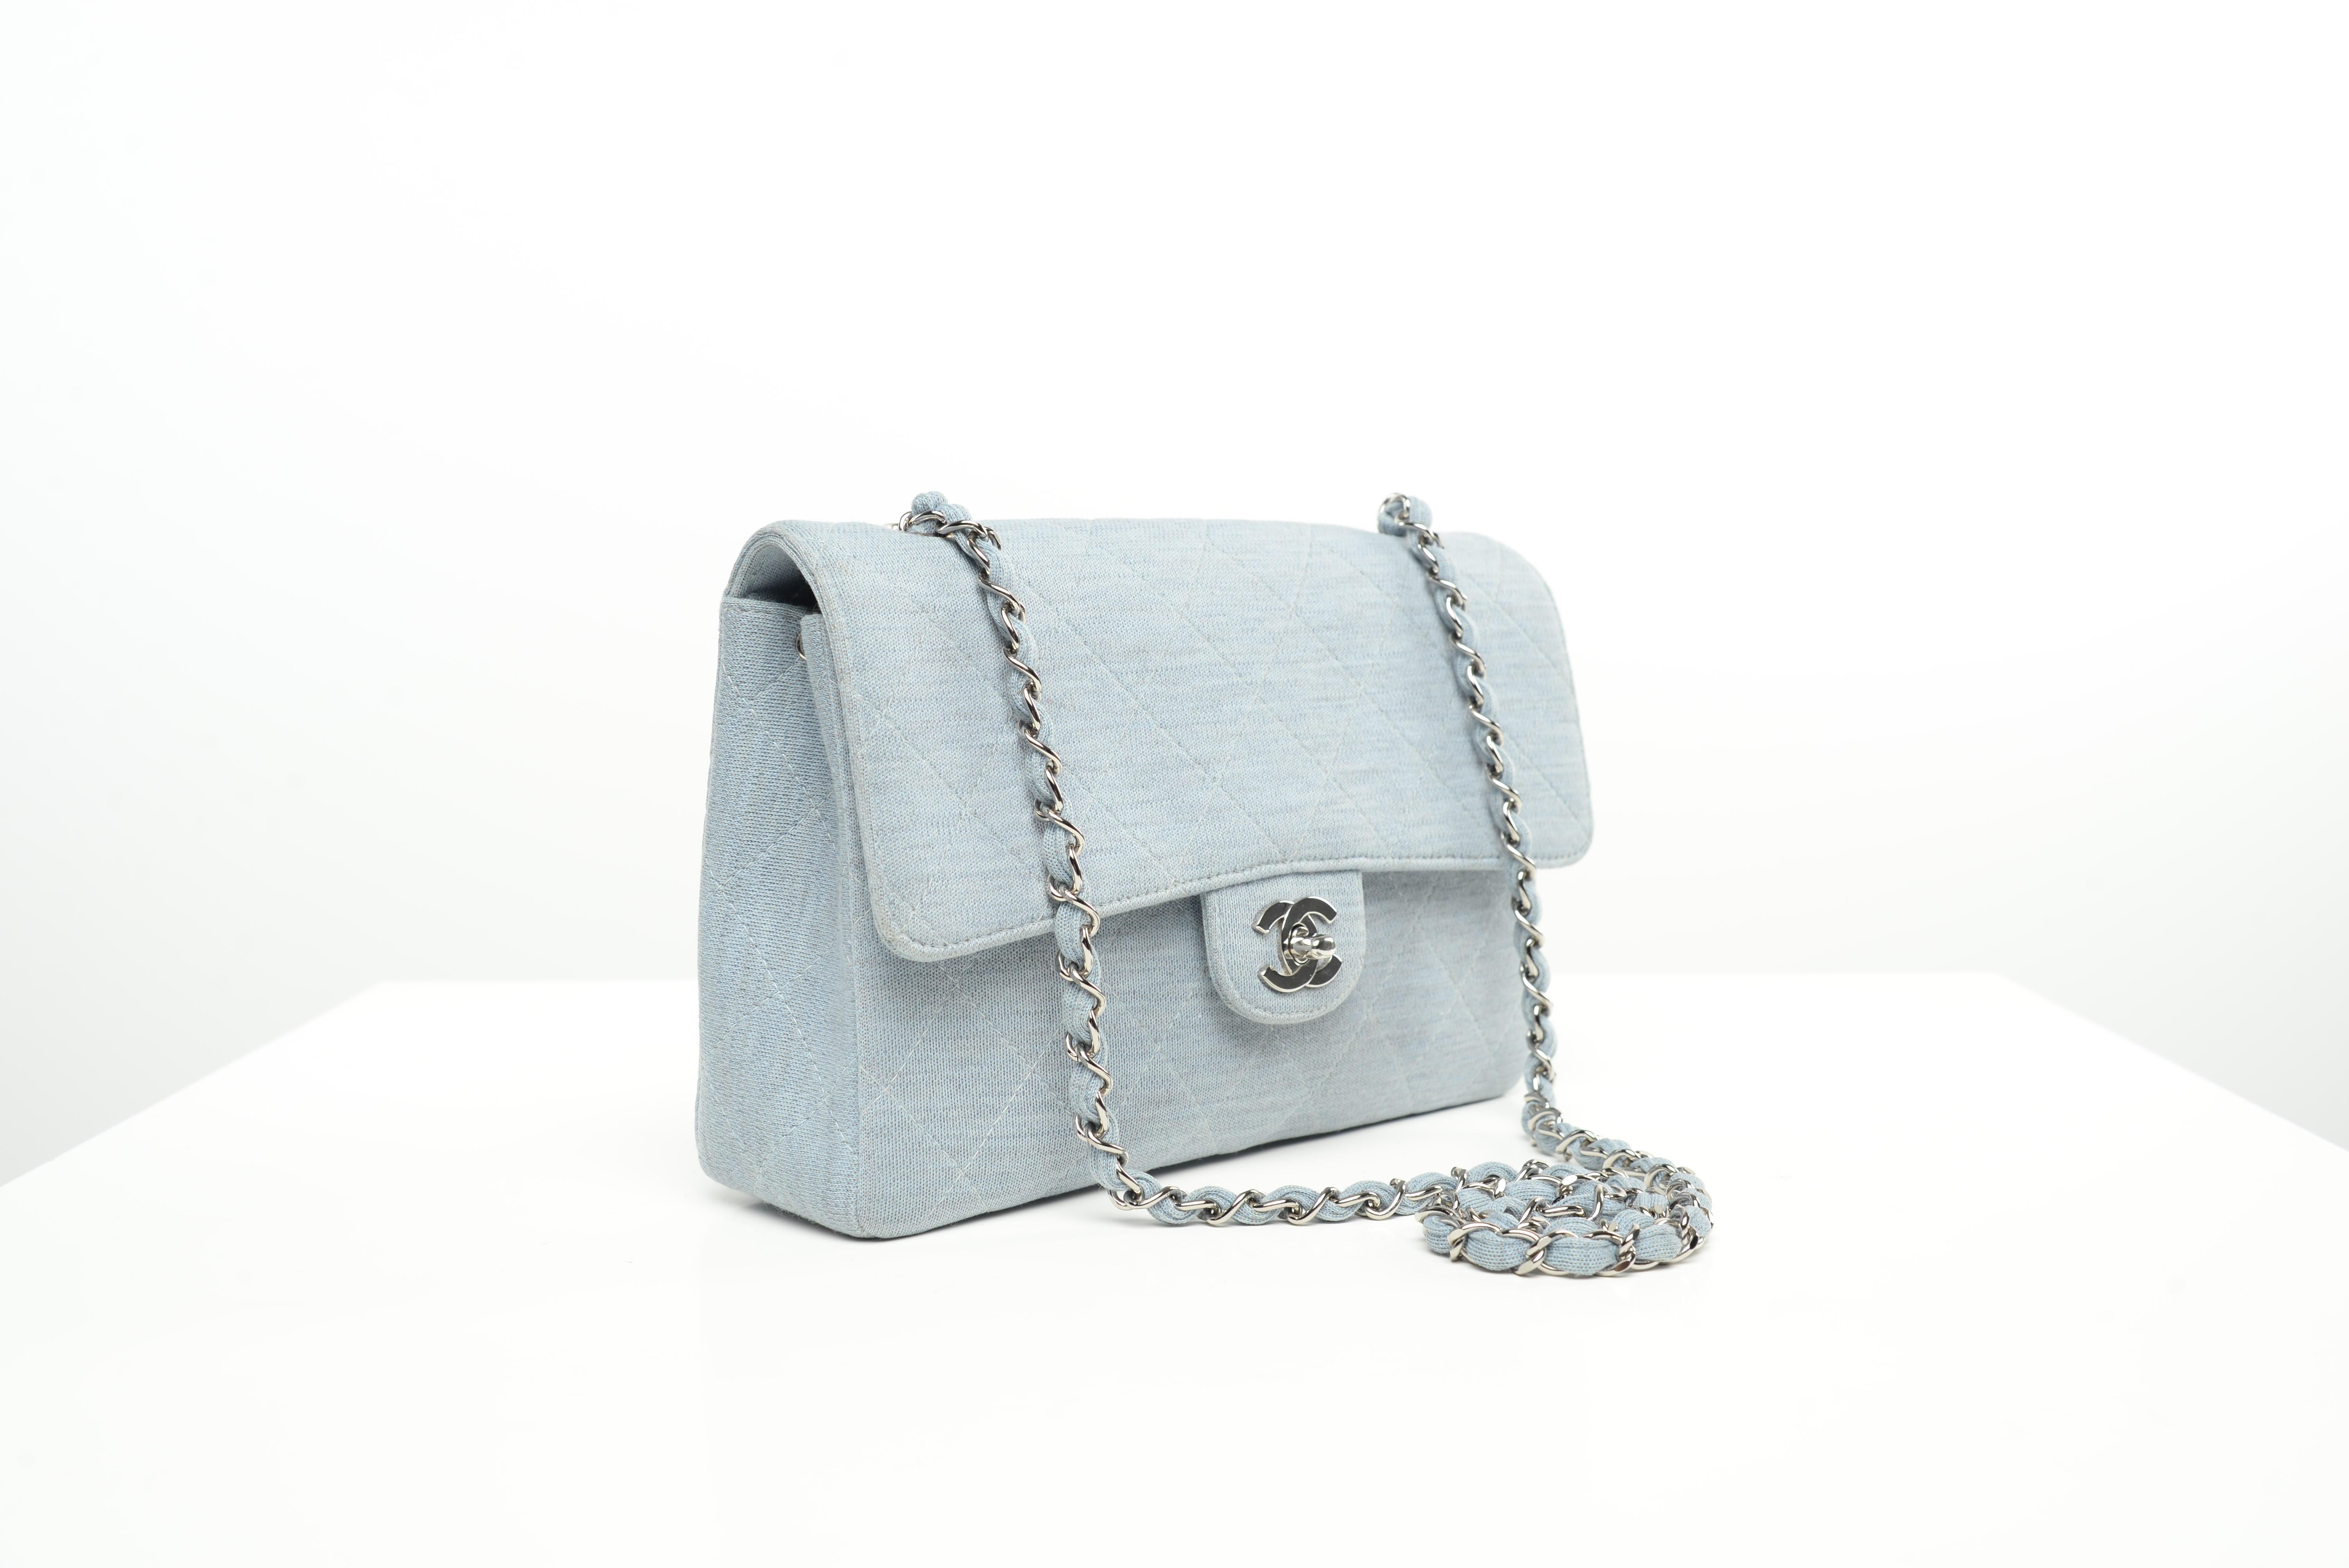 Women's or Men's Chanel Flap Bag Light Blue Denim Look SHW 